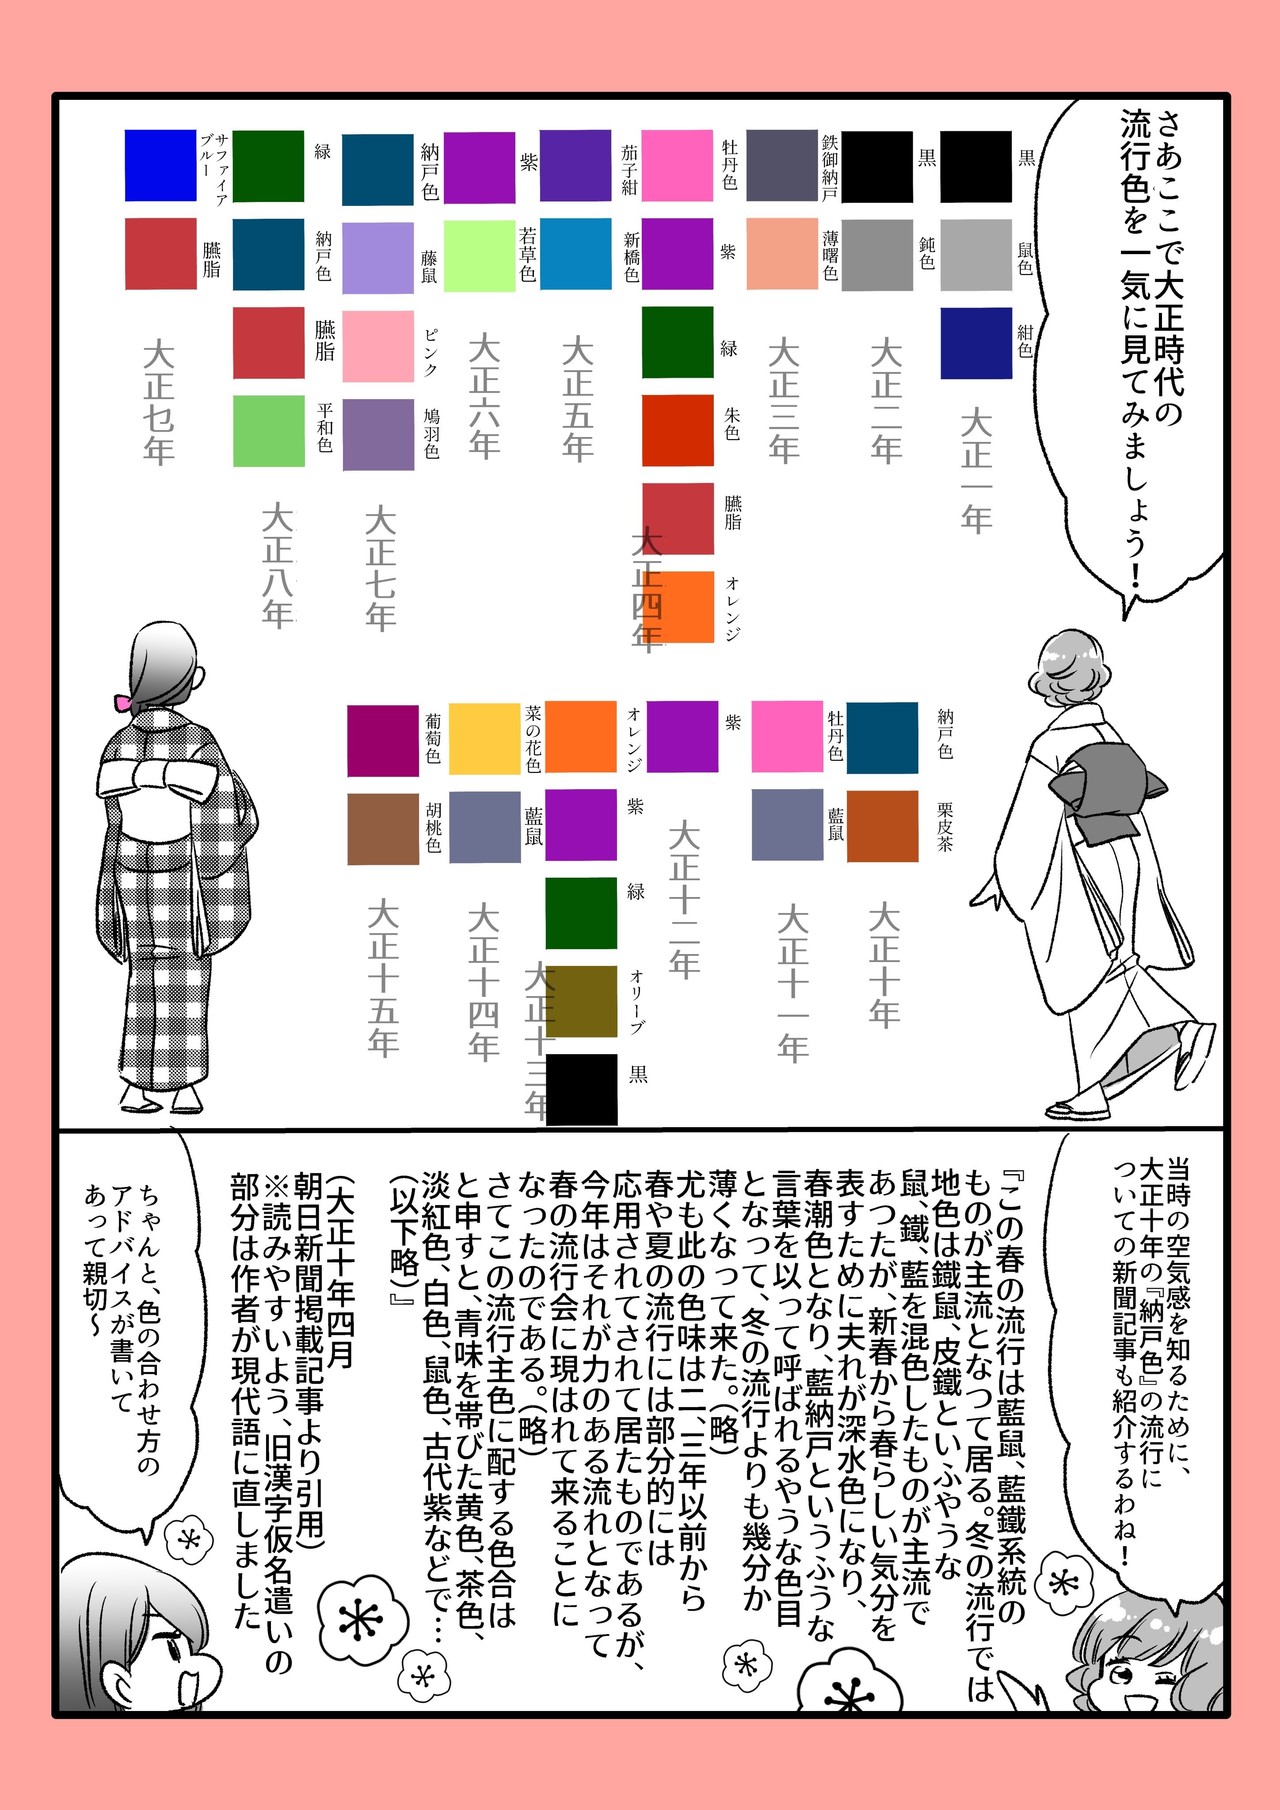 零れ話 大正時代の 流行色 について更に詳しく調べたよ 伊田チヨ子 Note